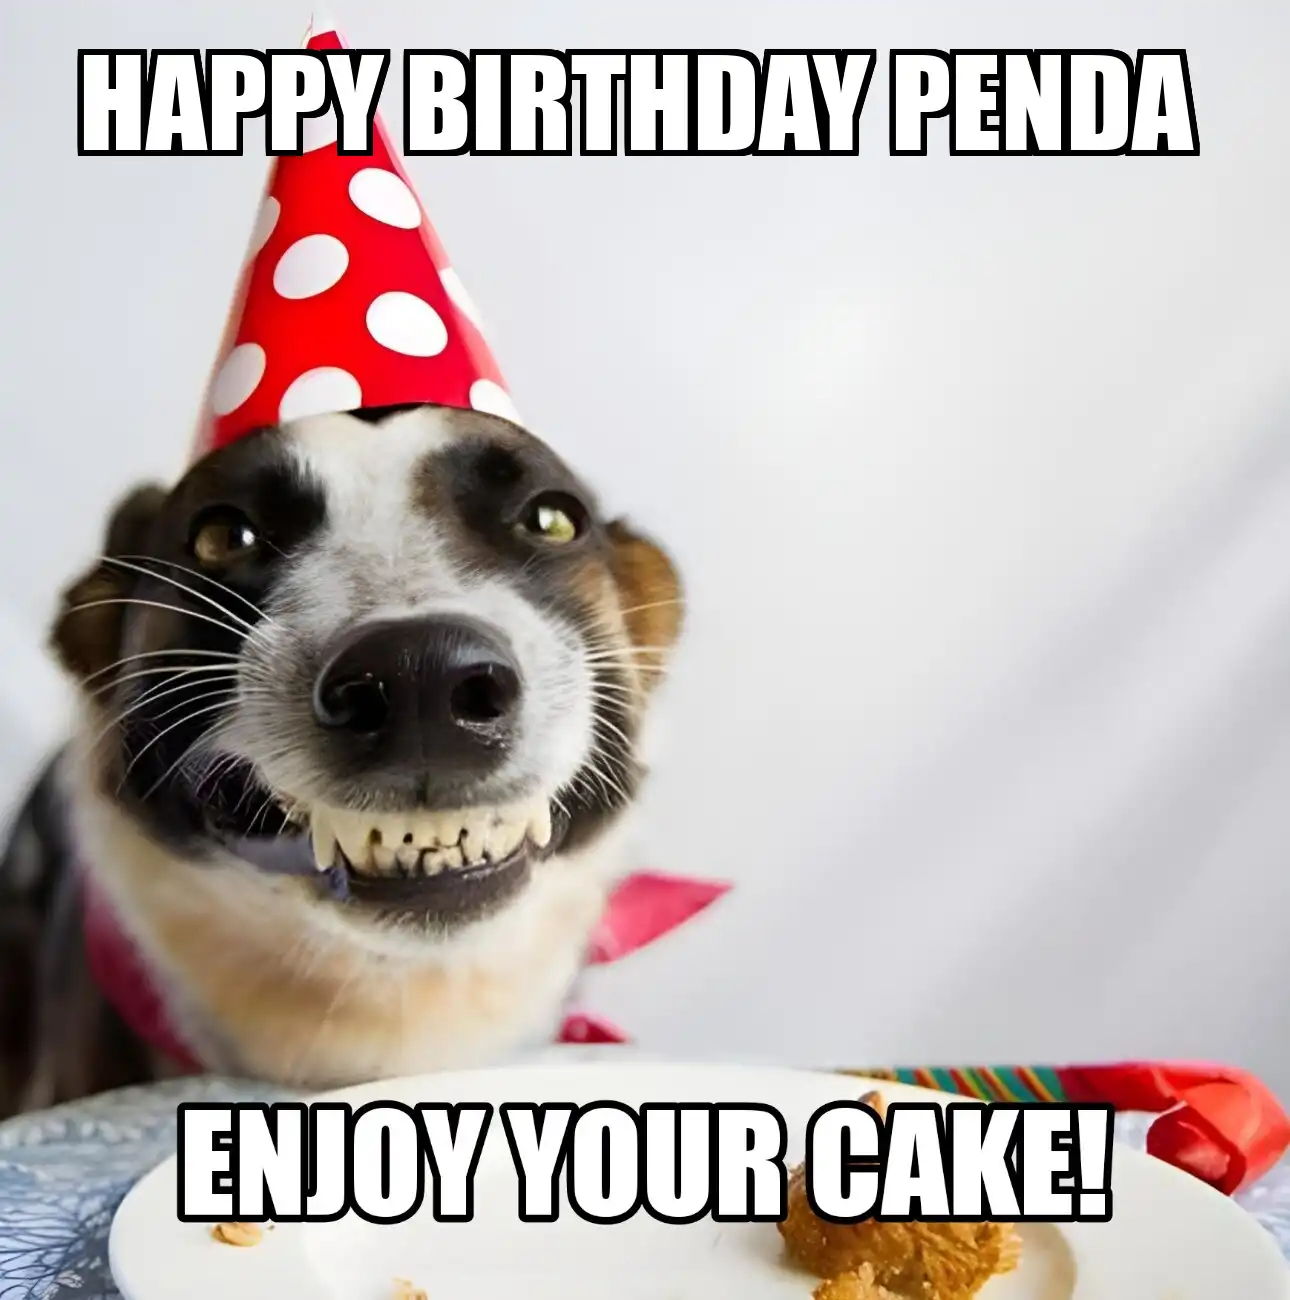 Happy Birthday Penda Enjoy Your Cake Dog Meme